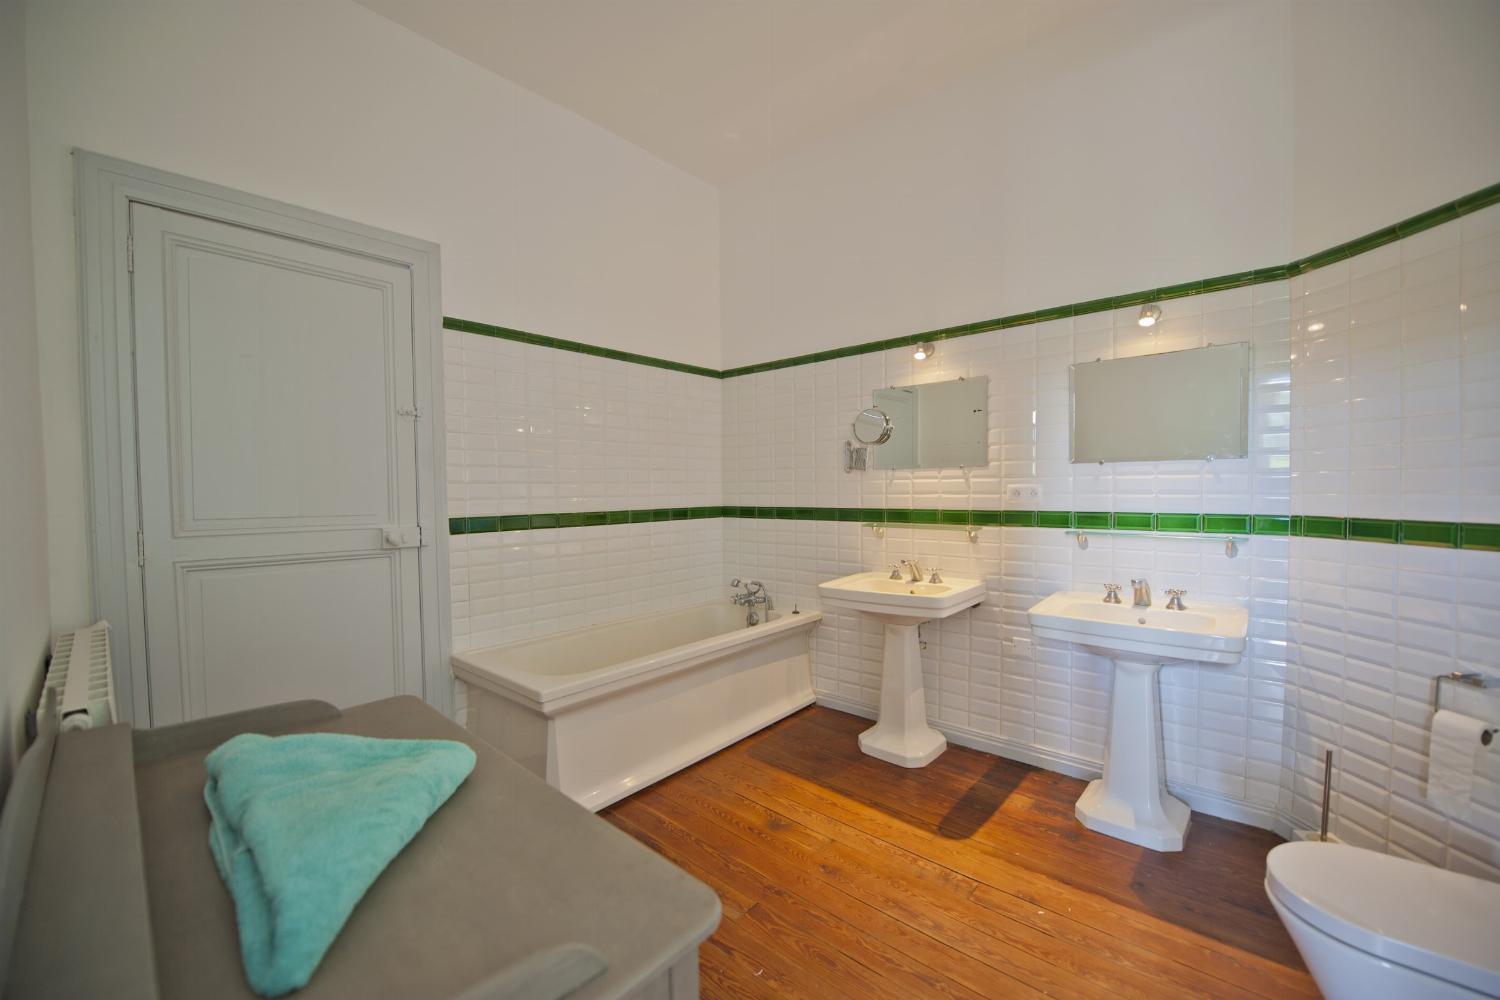 Salle de bain | Location maison dans le sud de la France